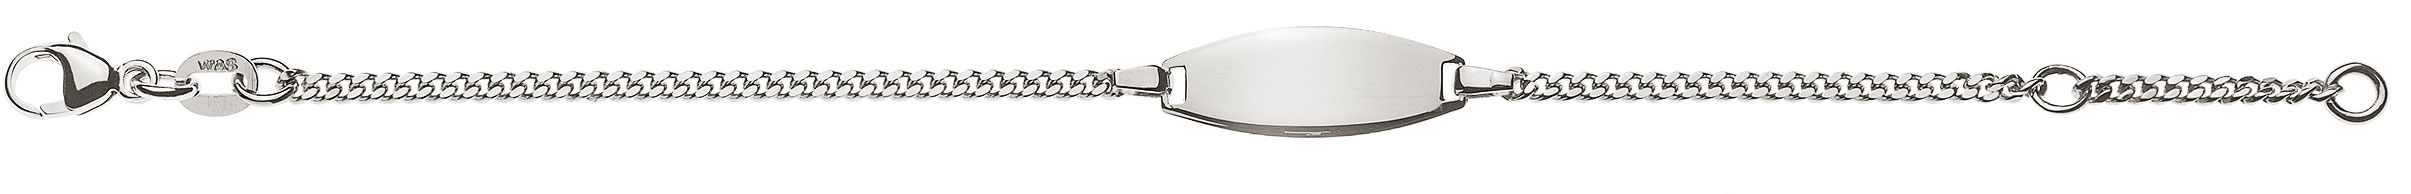 AURONOS Prestige ID-Bracelet 18k Weissgold Panzerkette geschliffen 16cm